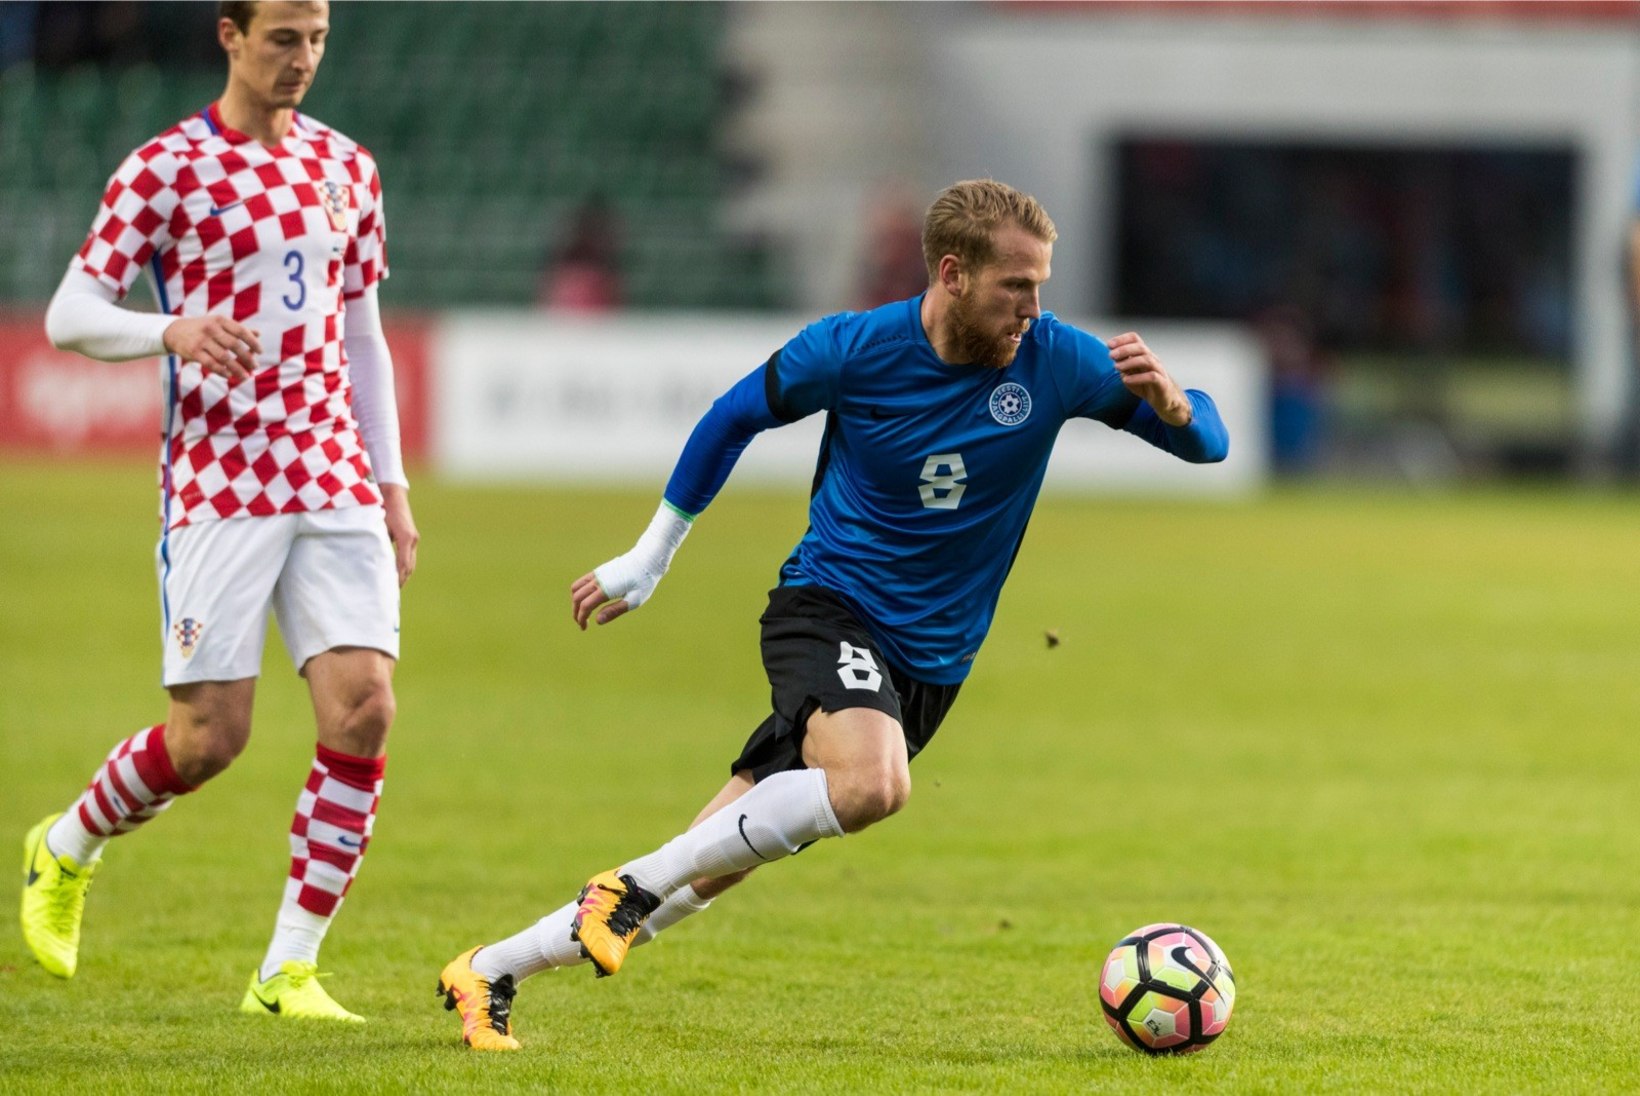 KOLMAS POOLAEG | Eesti jalgpallurid pagevad Soome, kas seal ikka on parem? 